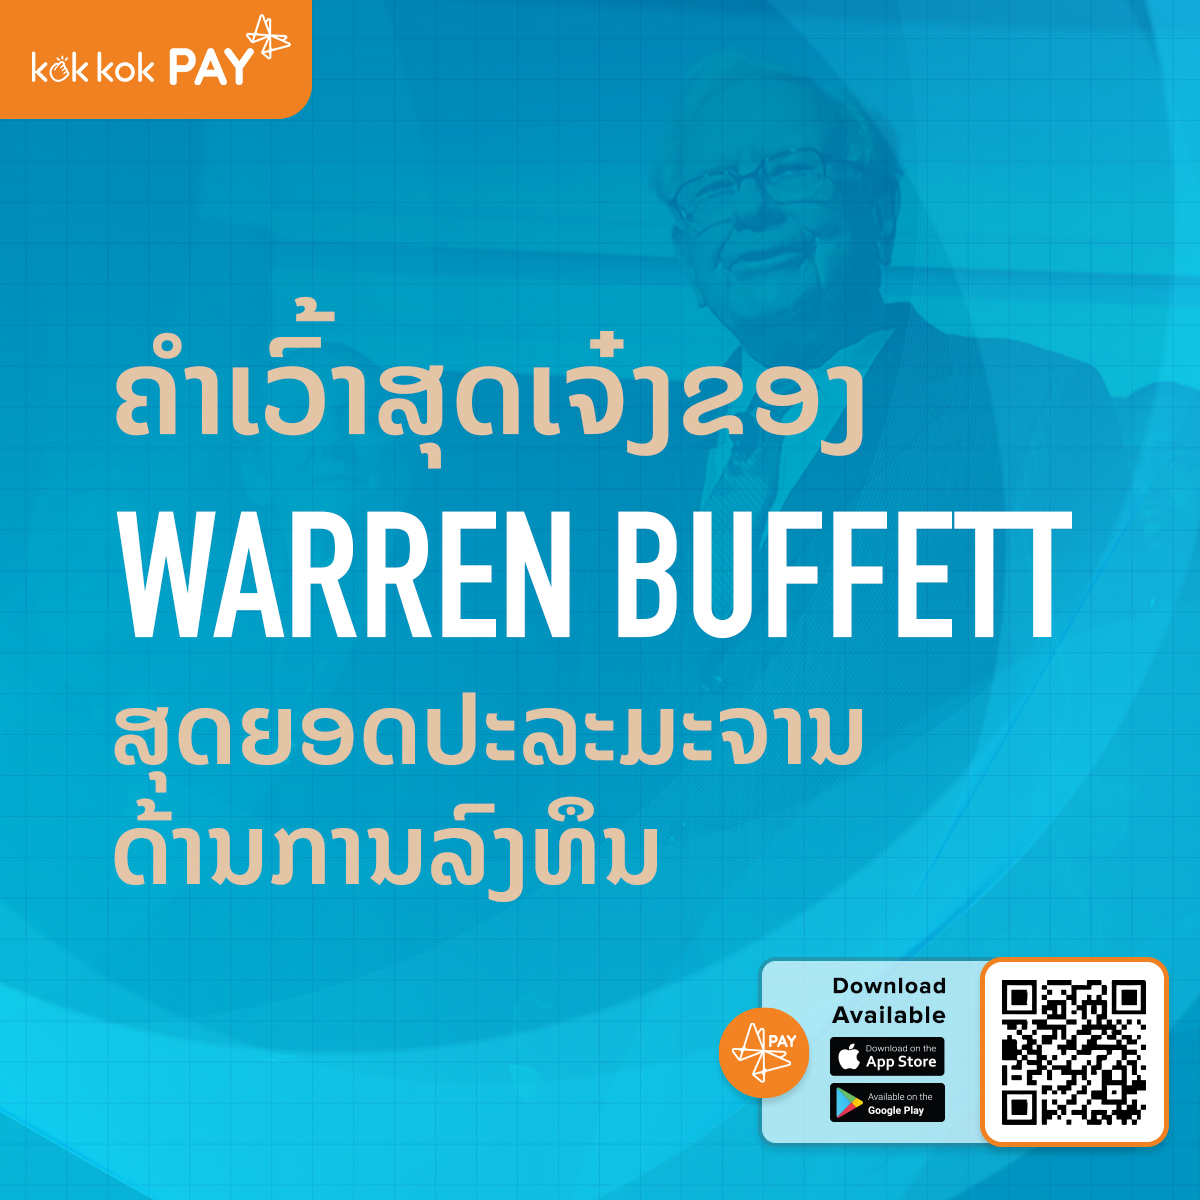 ຄຳເວົ້າສຸດເຈ໋ງຂອງ Warren Buffett ສຸດຍອດປະລະມະຈານດ້ານການລົງທຶນ